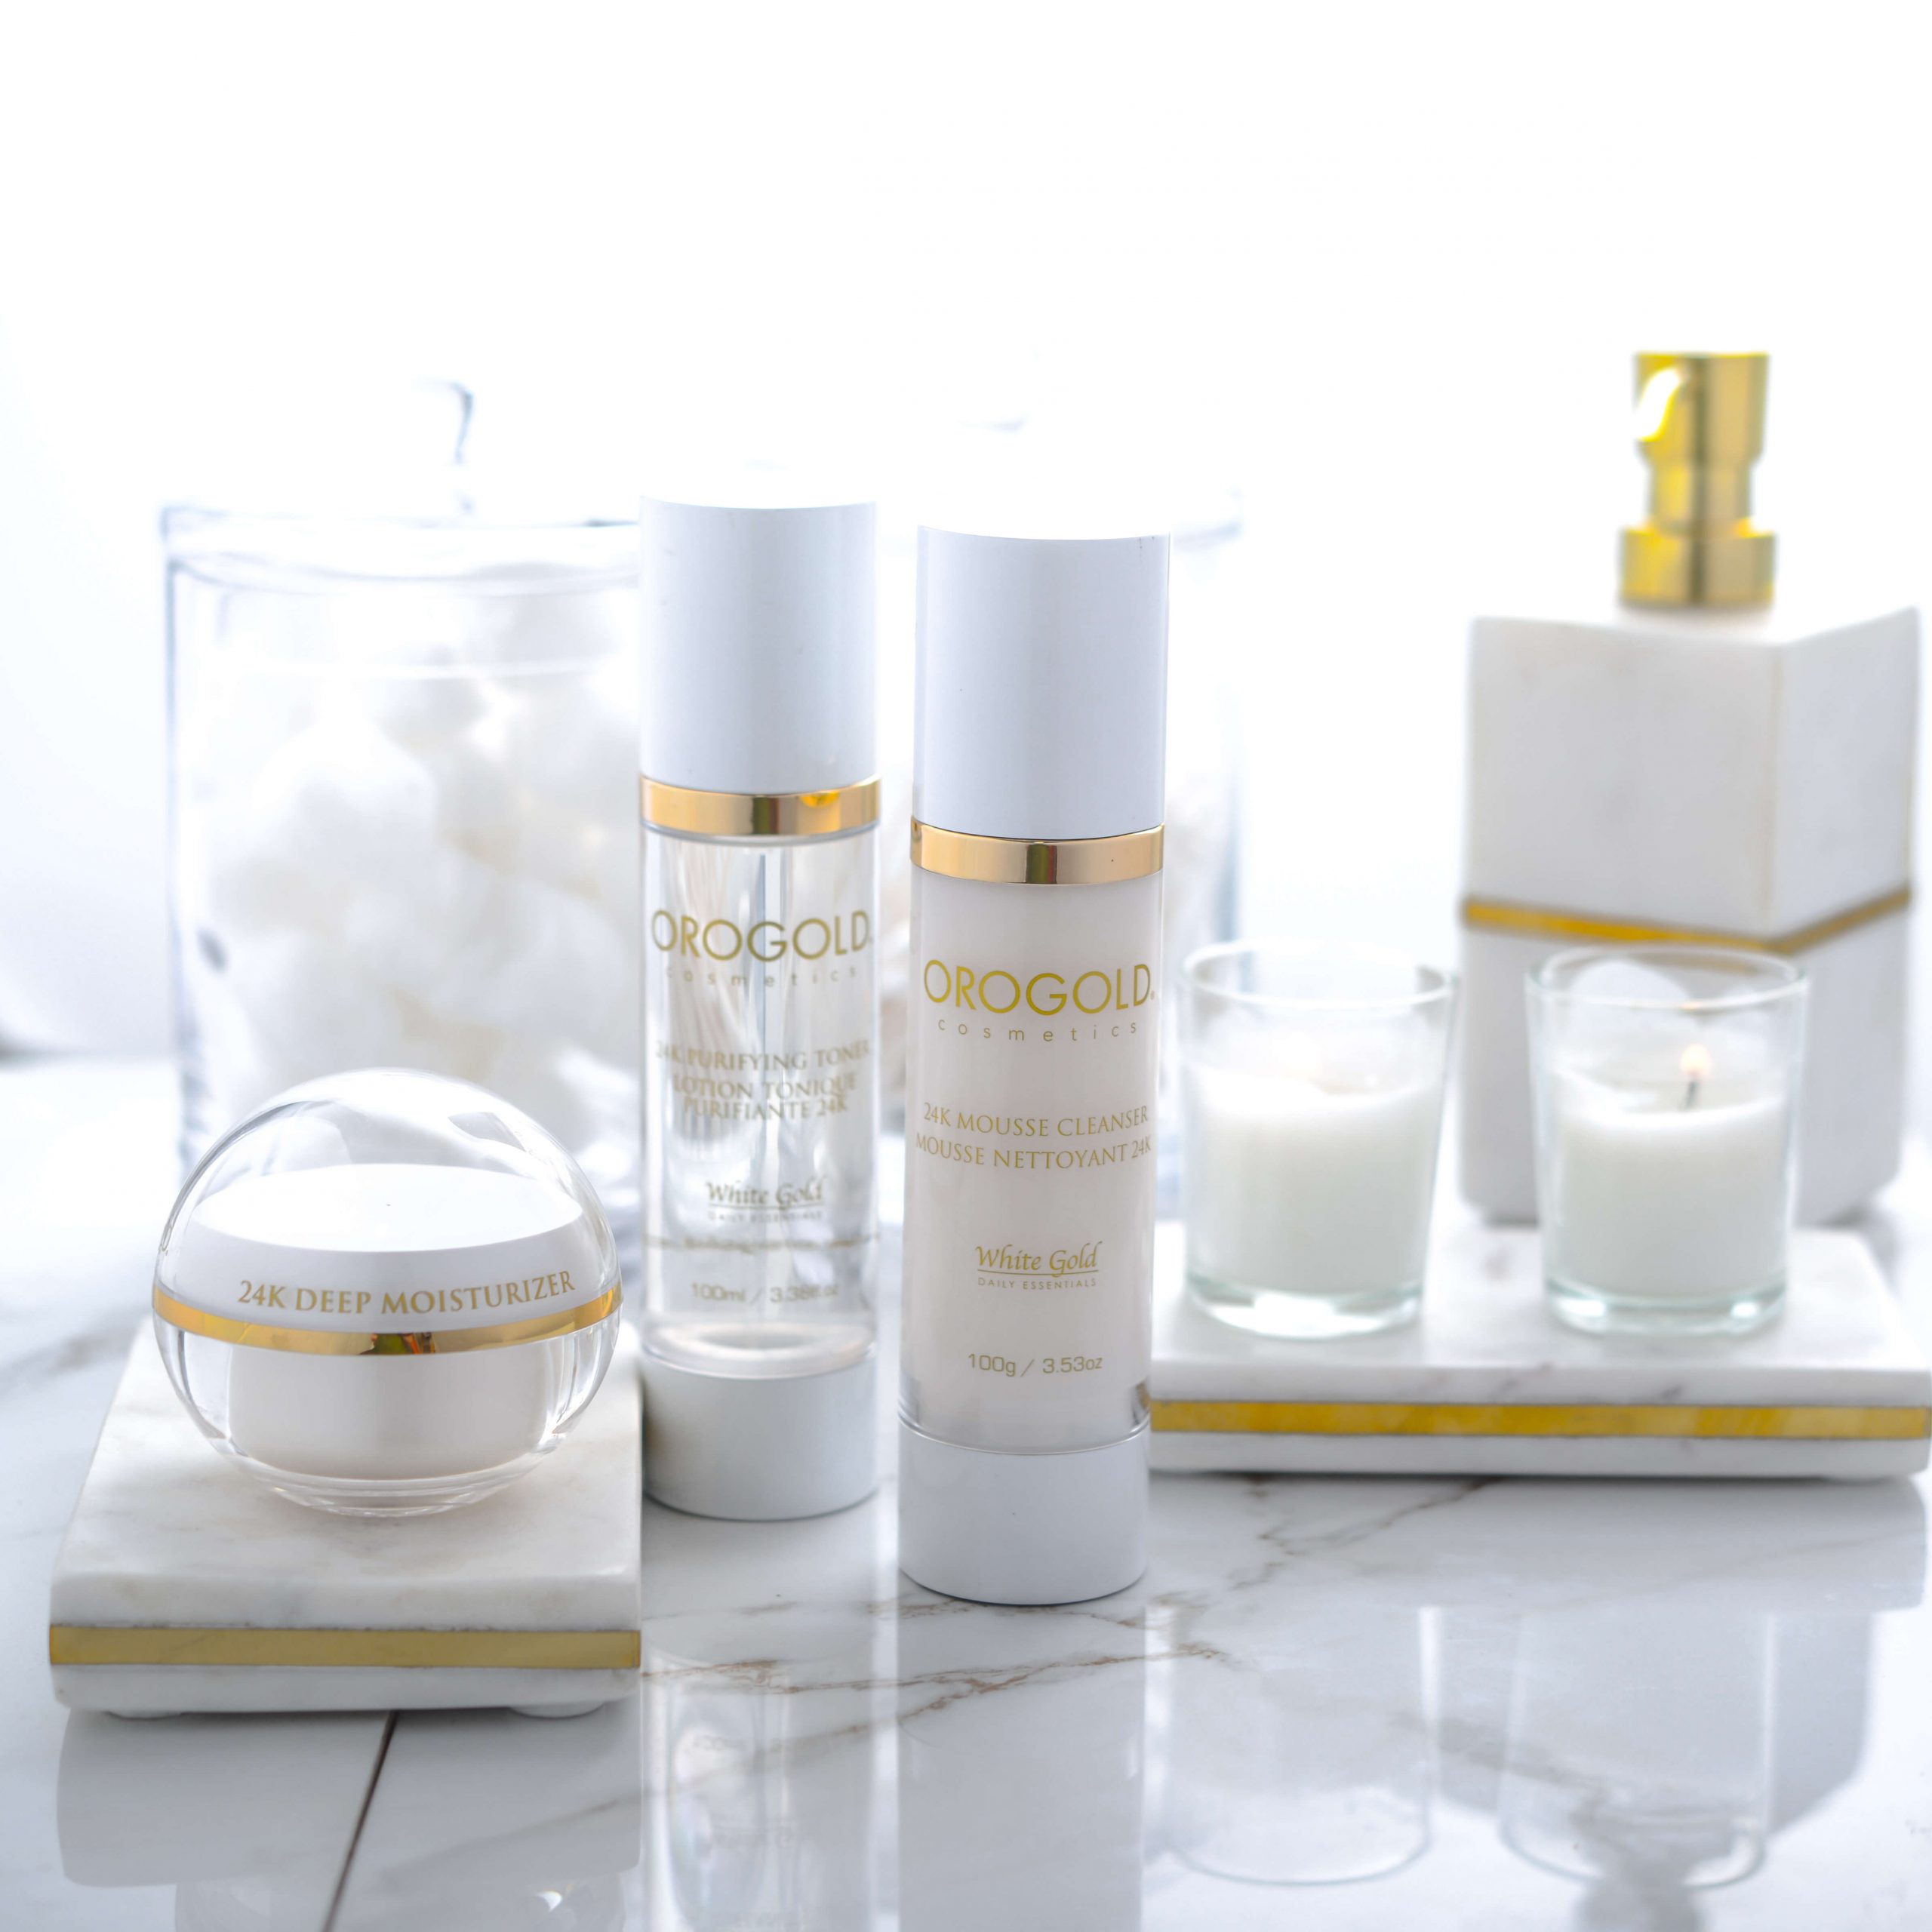 OROGOLD cleanser, toner, and moisturizer for summer skincare